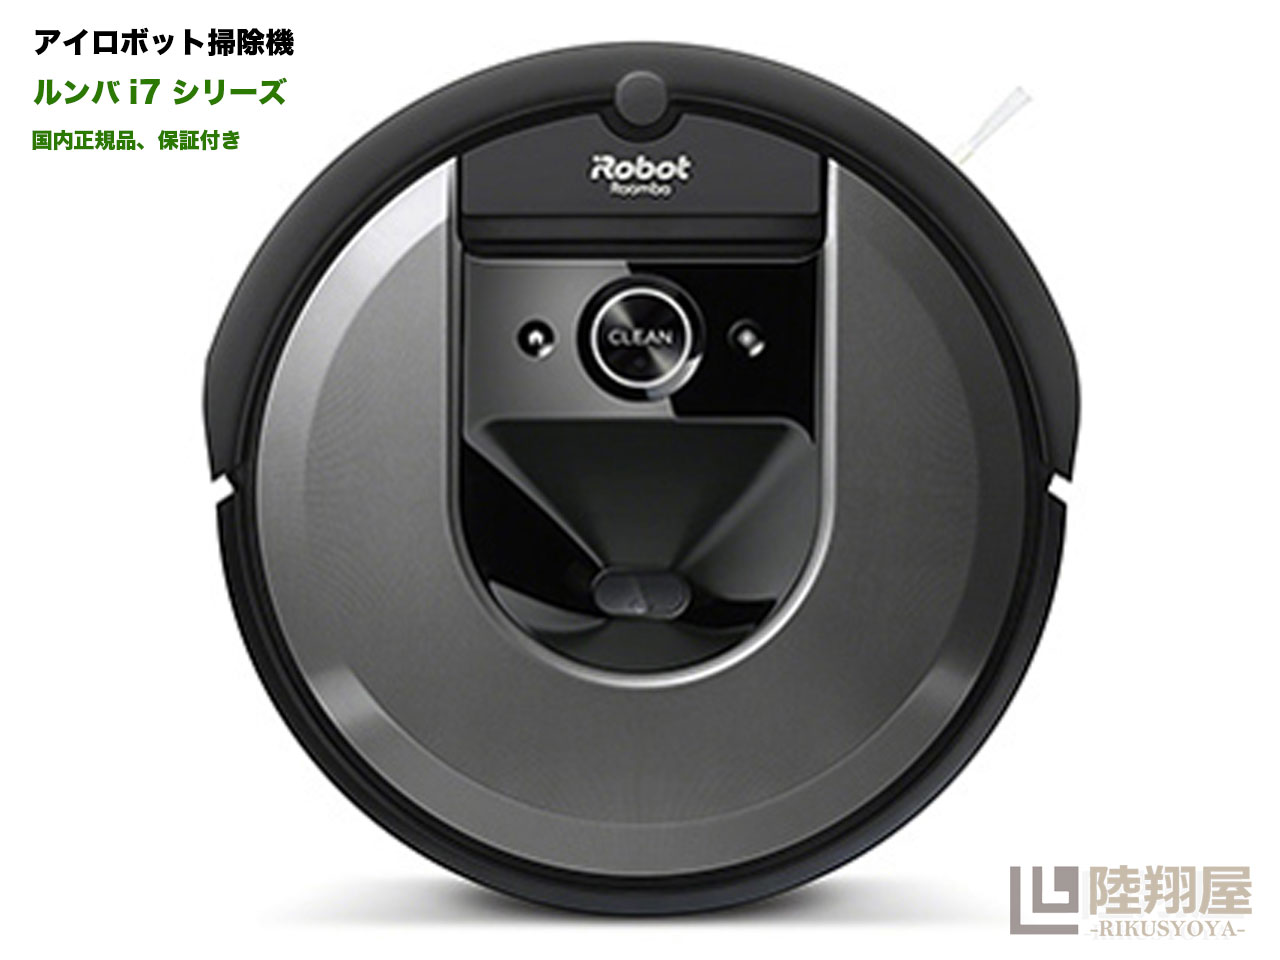 アイロボット ロボット掃除機 ★新品★ルンバ i7 ロボット掃除機 アイロボット 水洗いできるダストボックス wifi対応 スマートマッピング 自動充電・運転再開 吸引力 カーペット 畳 i715060 Alexa対応